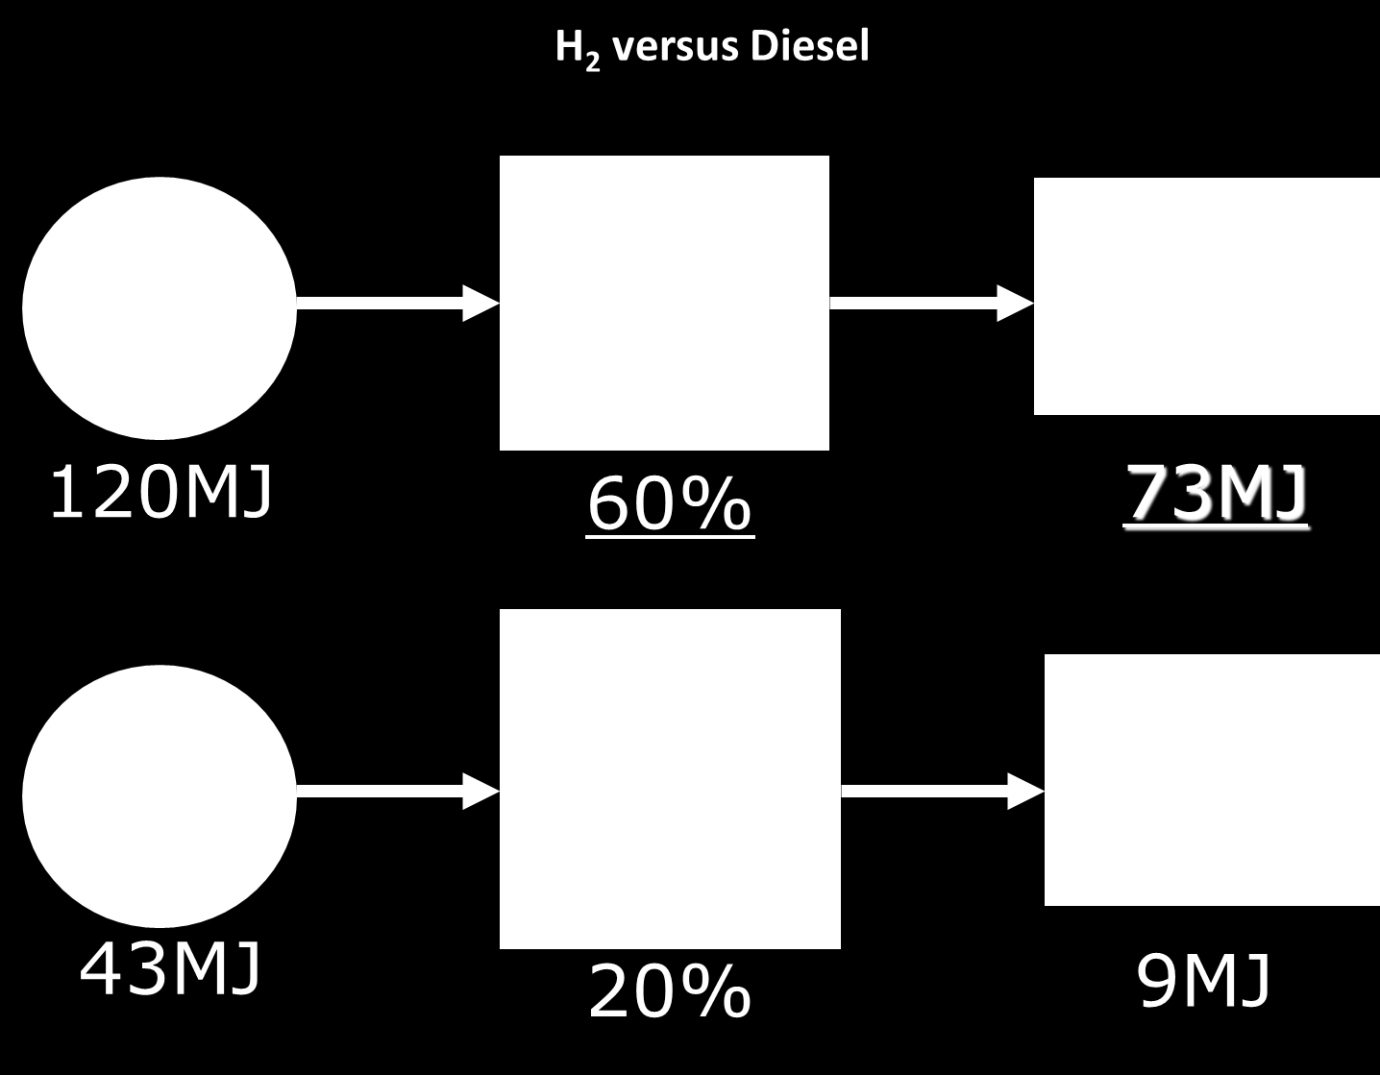 Εικόνα 3: Σύγκριση υδρογόνου ως φορέα ενέργειας σε σχέση με το πετρέλαιο. Το υδρογόνο έχει προταθεί να διαδραµατίσει κεντρικό ρόλο σε αυτή την νέα οικονοµία, καλούµενη και ως «οικονοµία υδρογόνου».